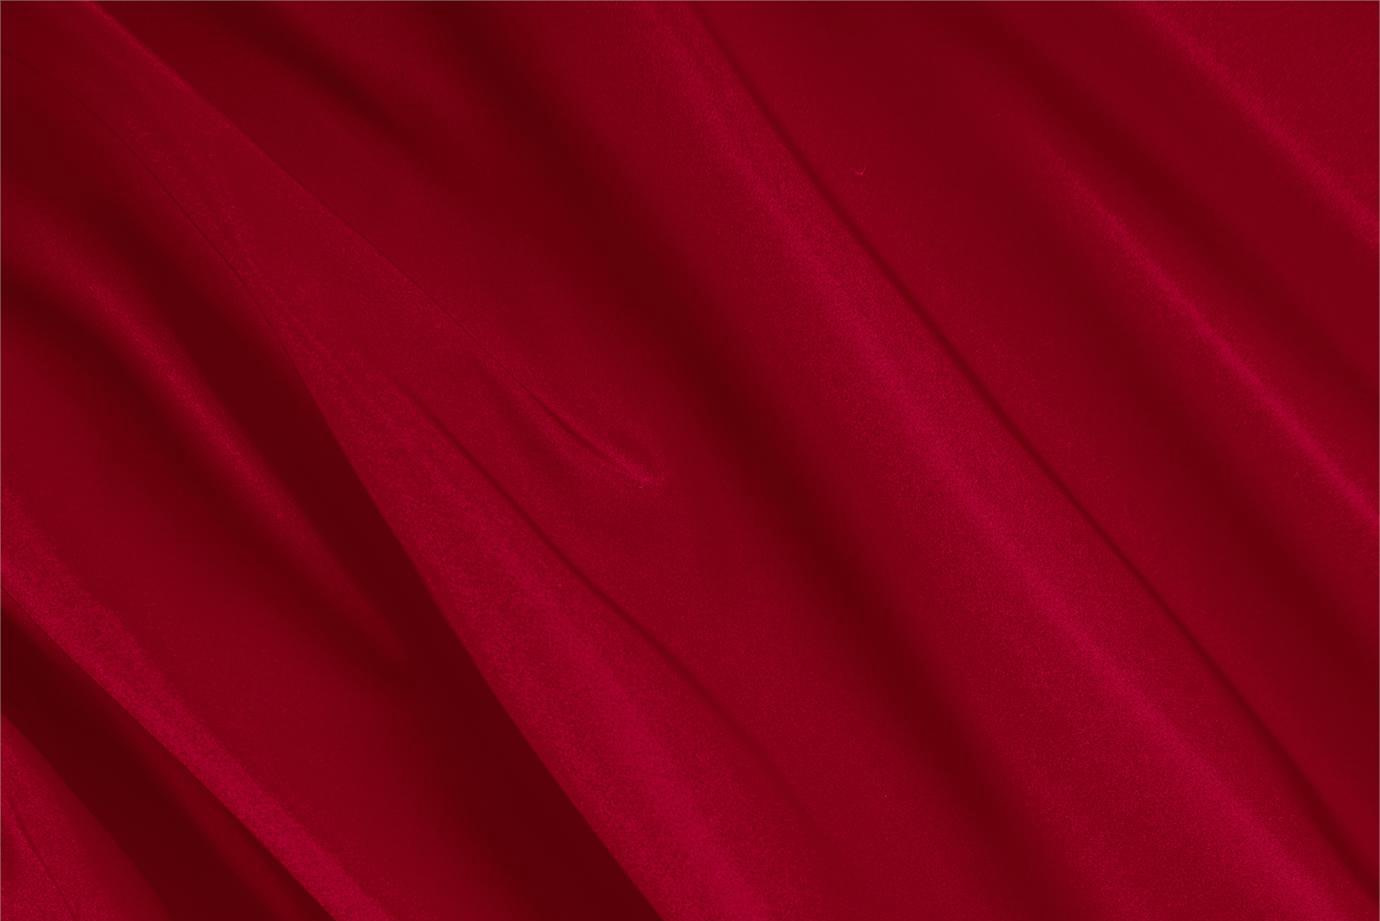 Tessuto Radzemire Rosso Rubino in Seta per Abbigliamento UN000315